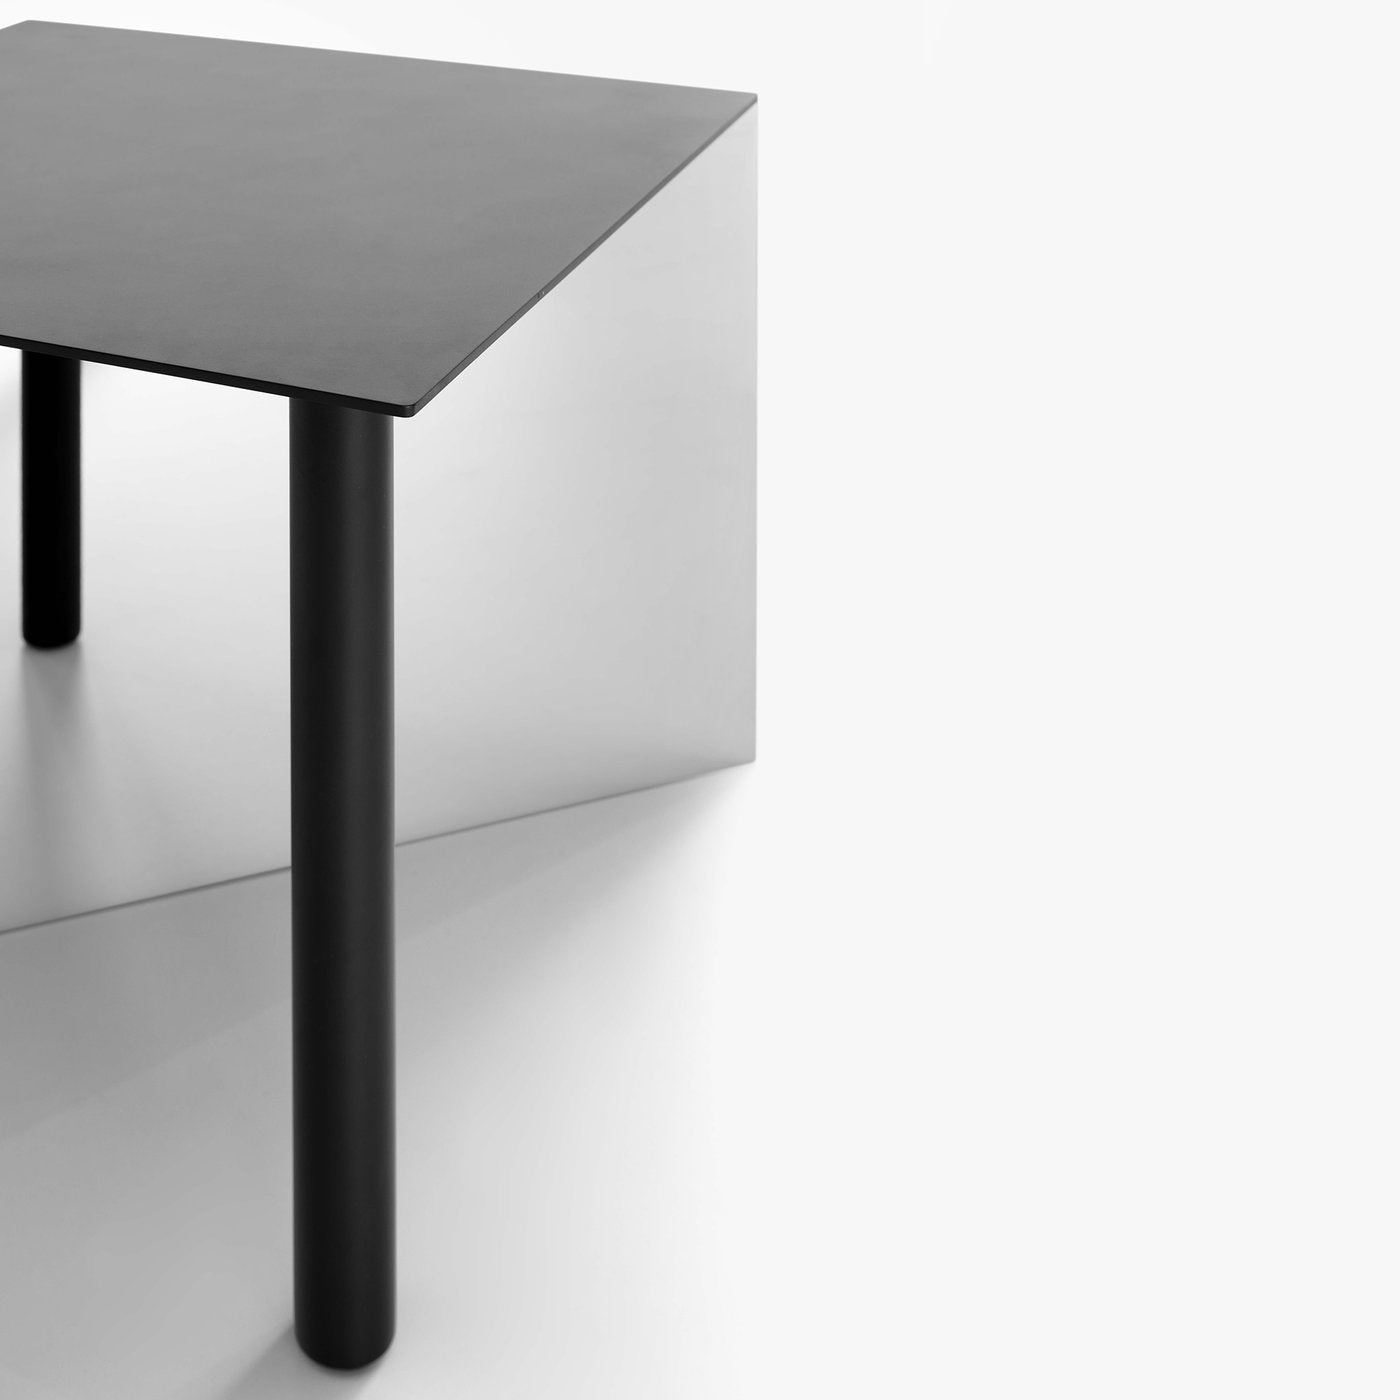 Piatto Low Square Table - Alternative view 1